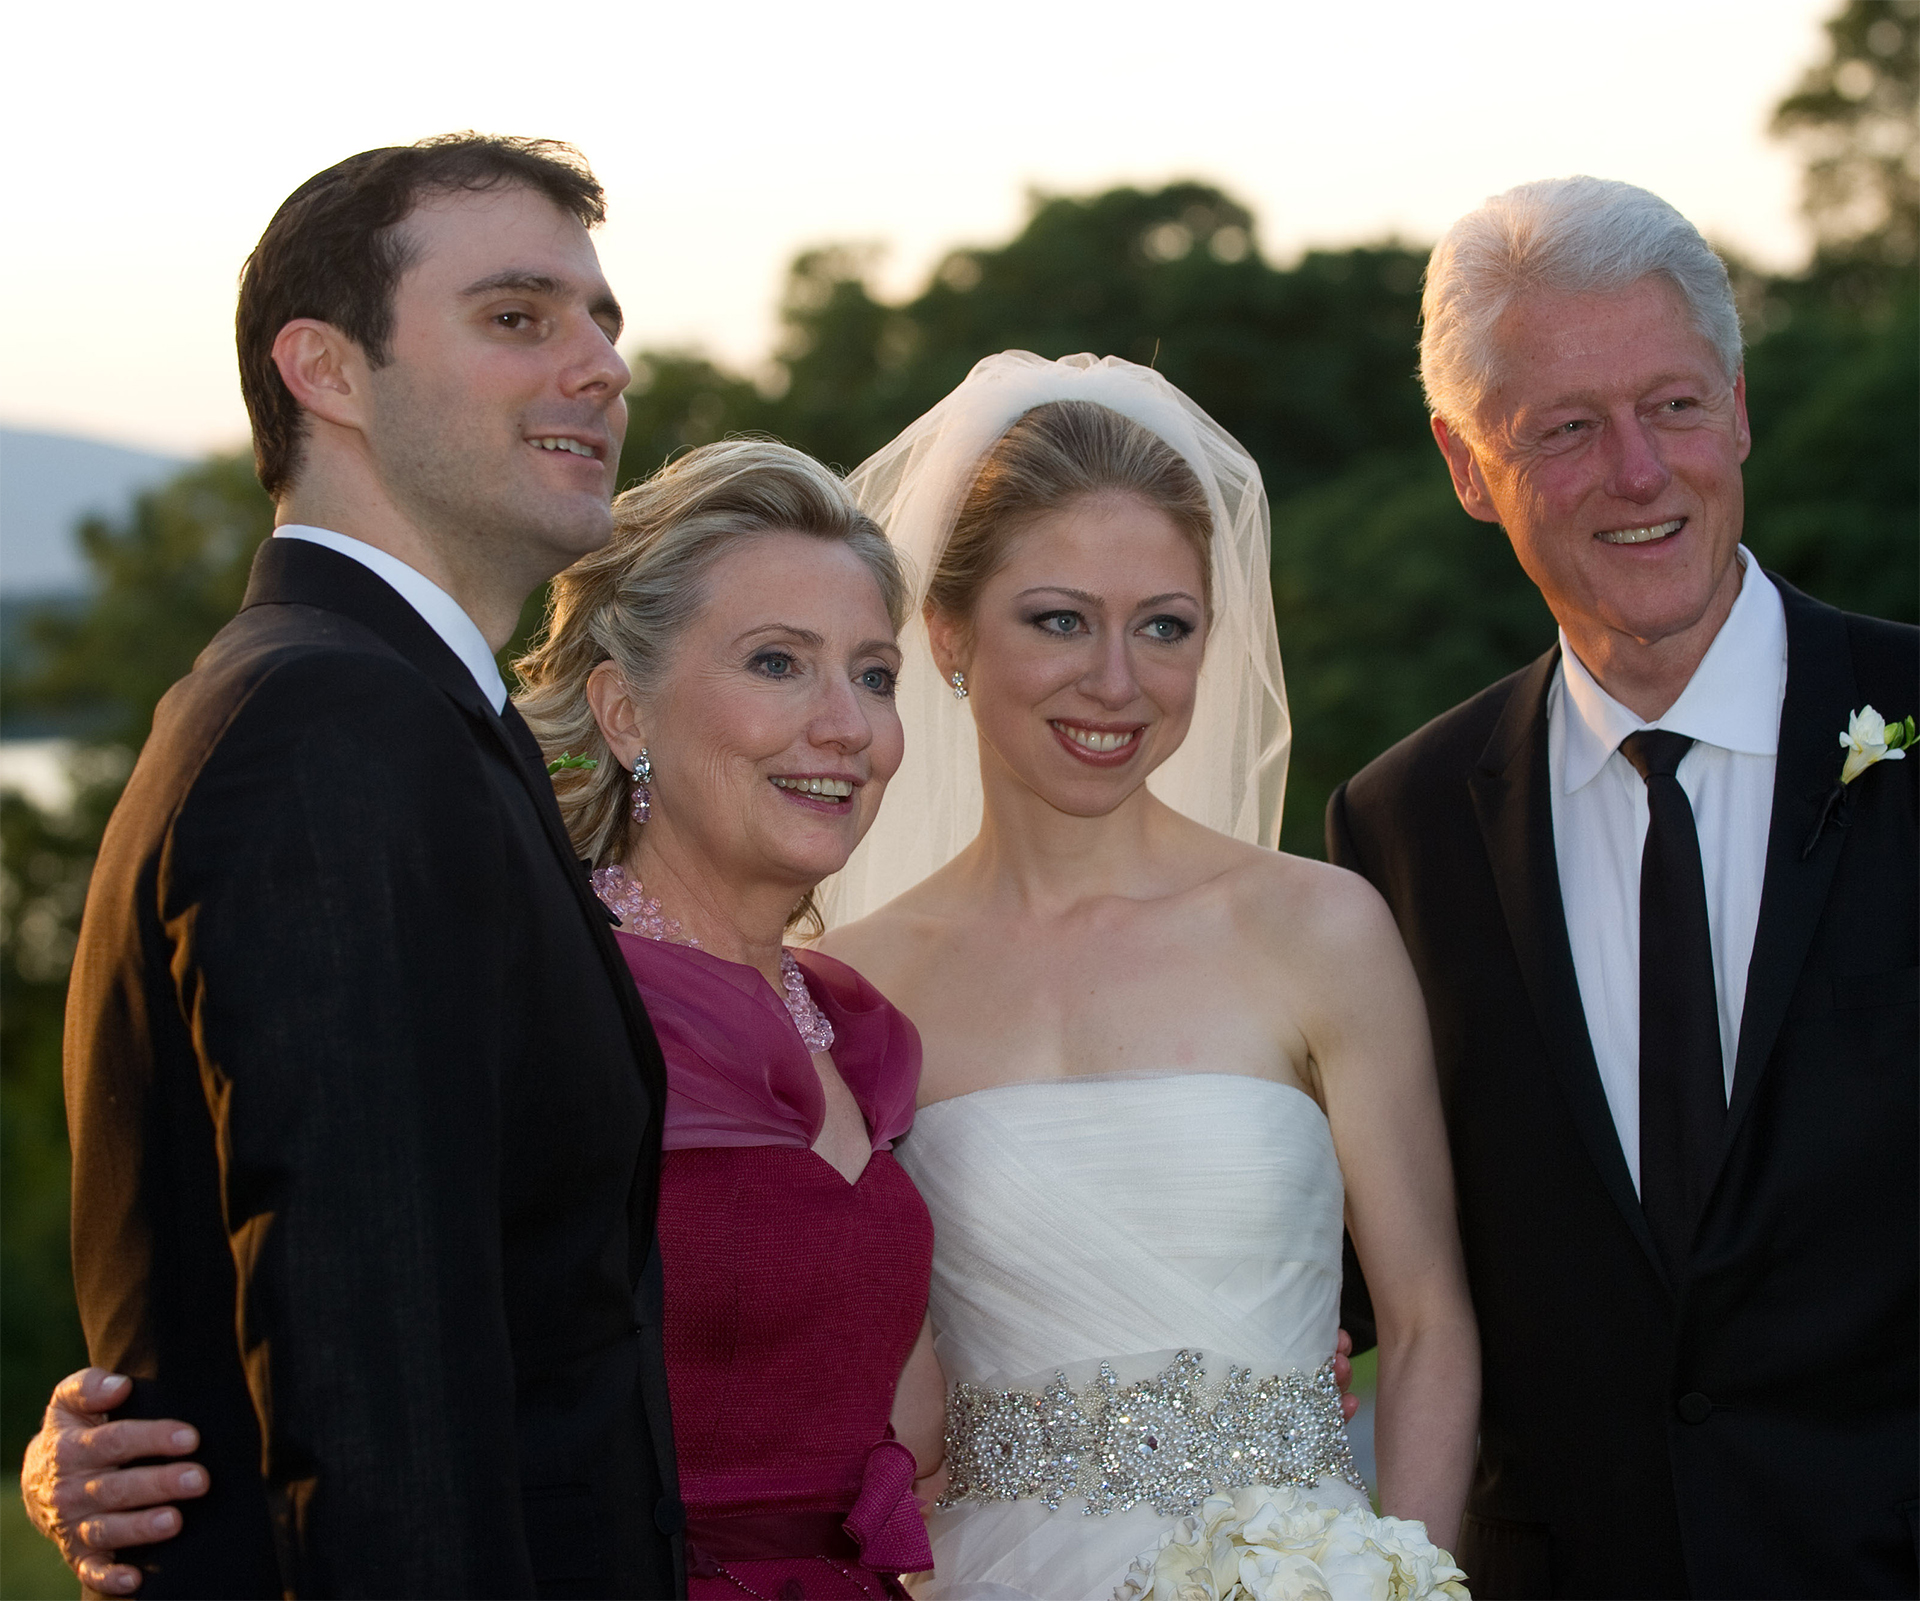 Chelsea Clinton announces second pregnancy